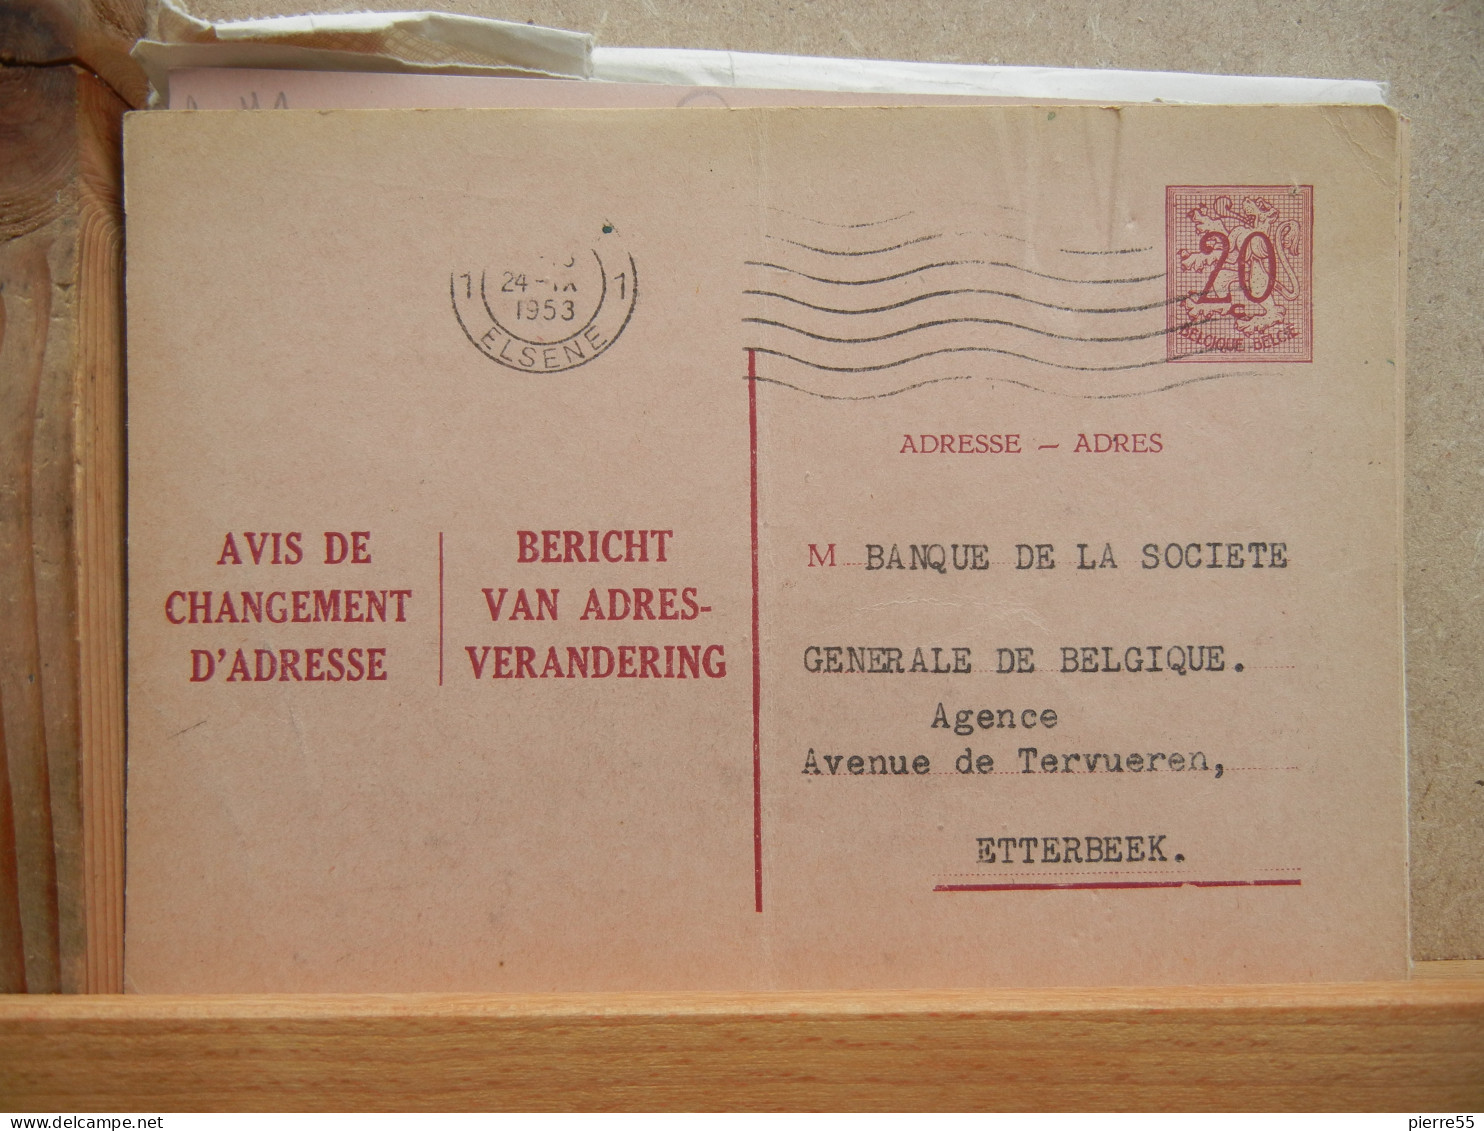 EP - Avis Changement Adresse - 20c Rouge Lion Héraldique Oblit Flamme 1953 - Addr. Chang.